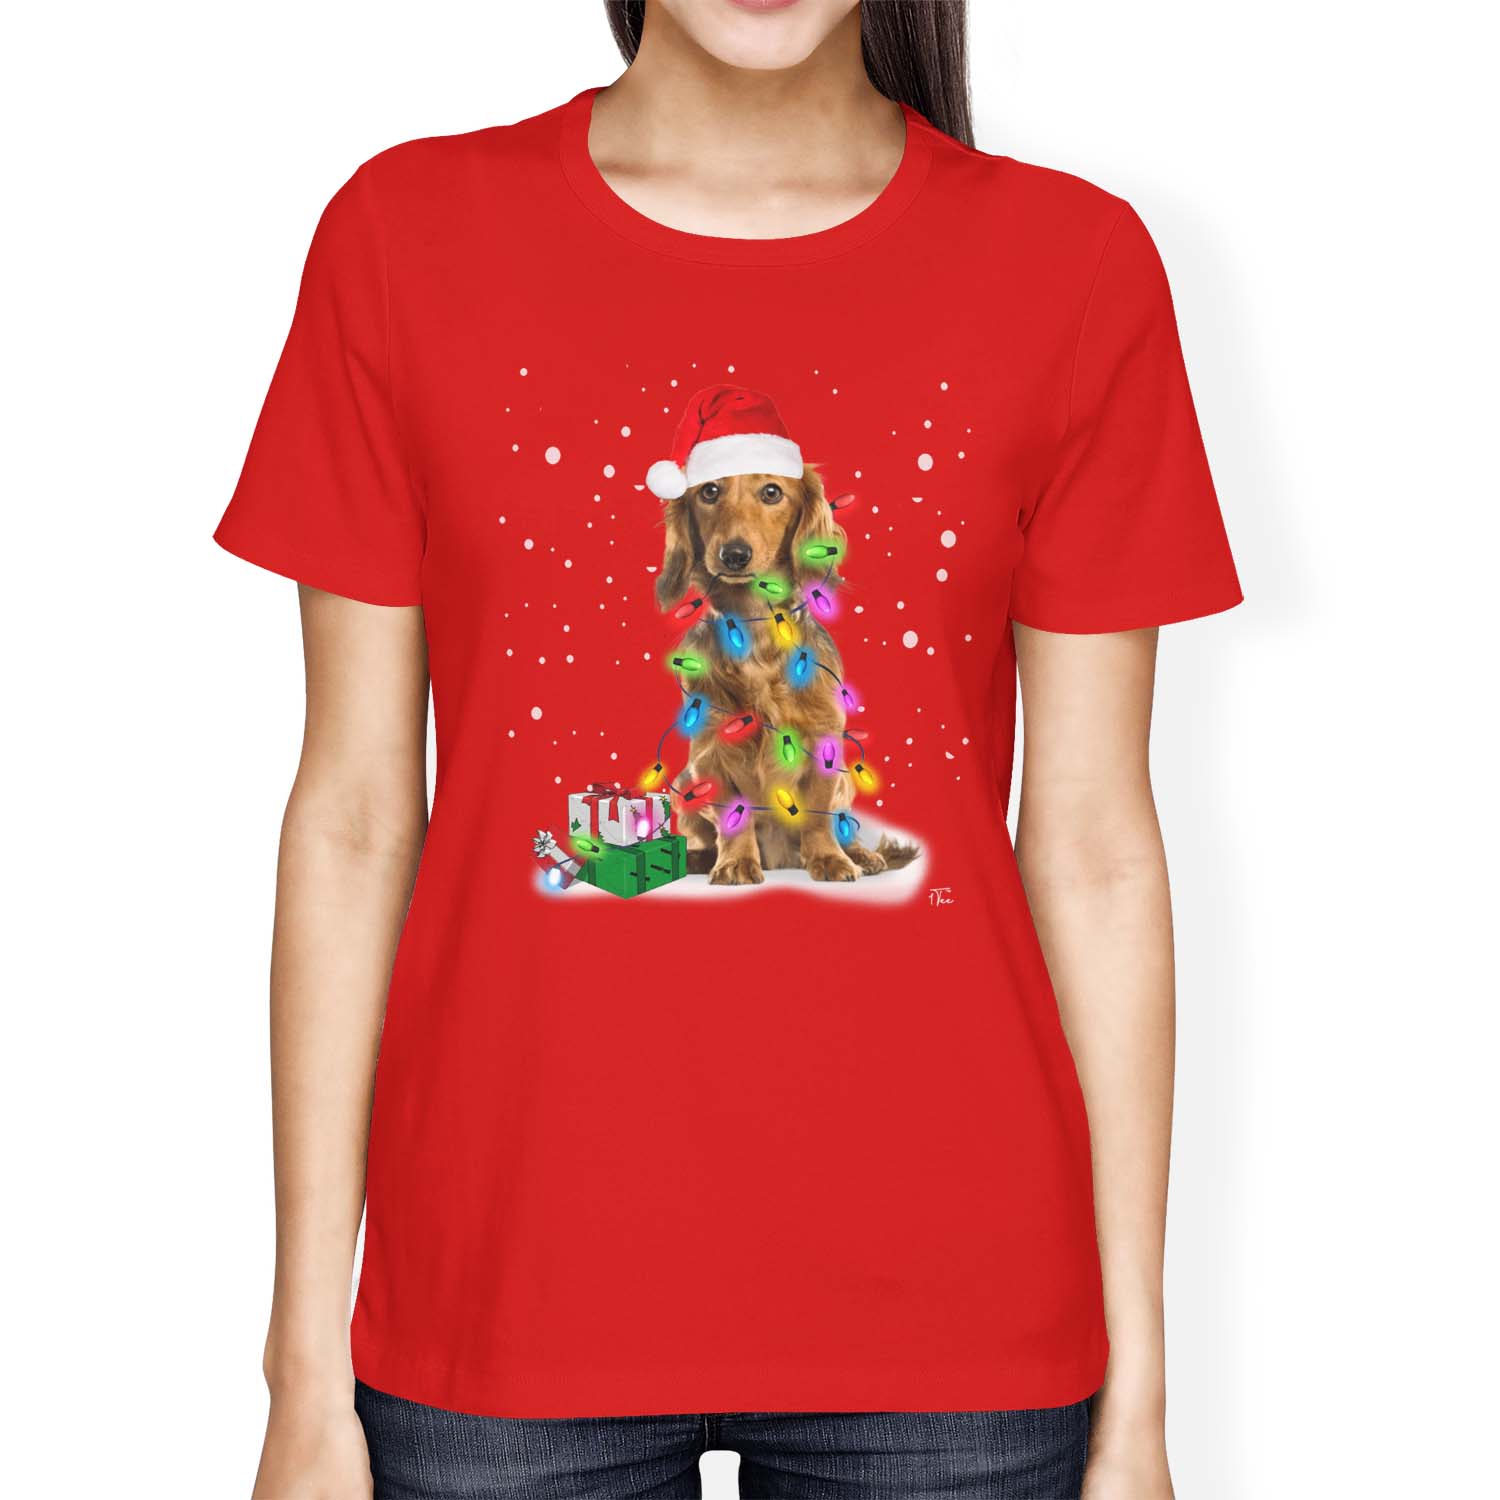 1Tee Perro Para hombre cubierto de luces de Navidad T-Shirt